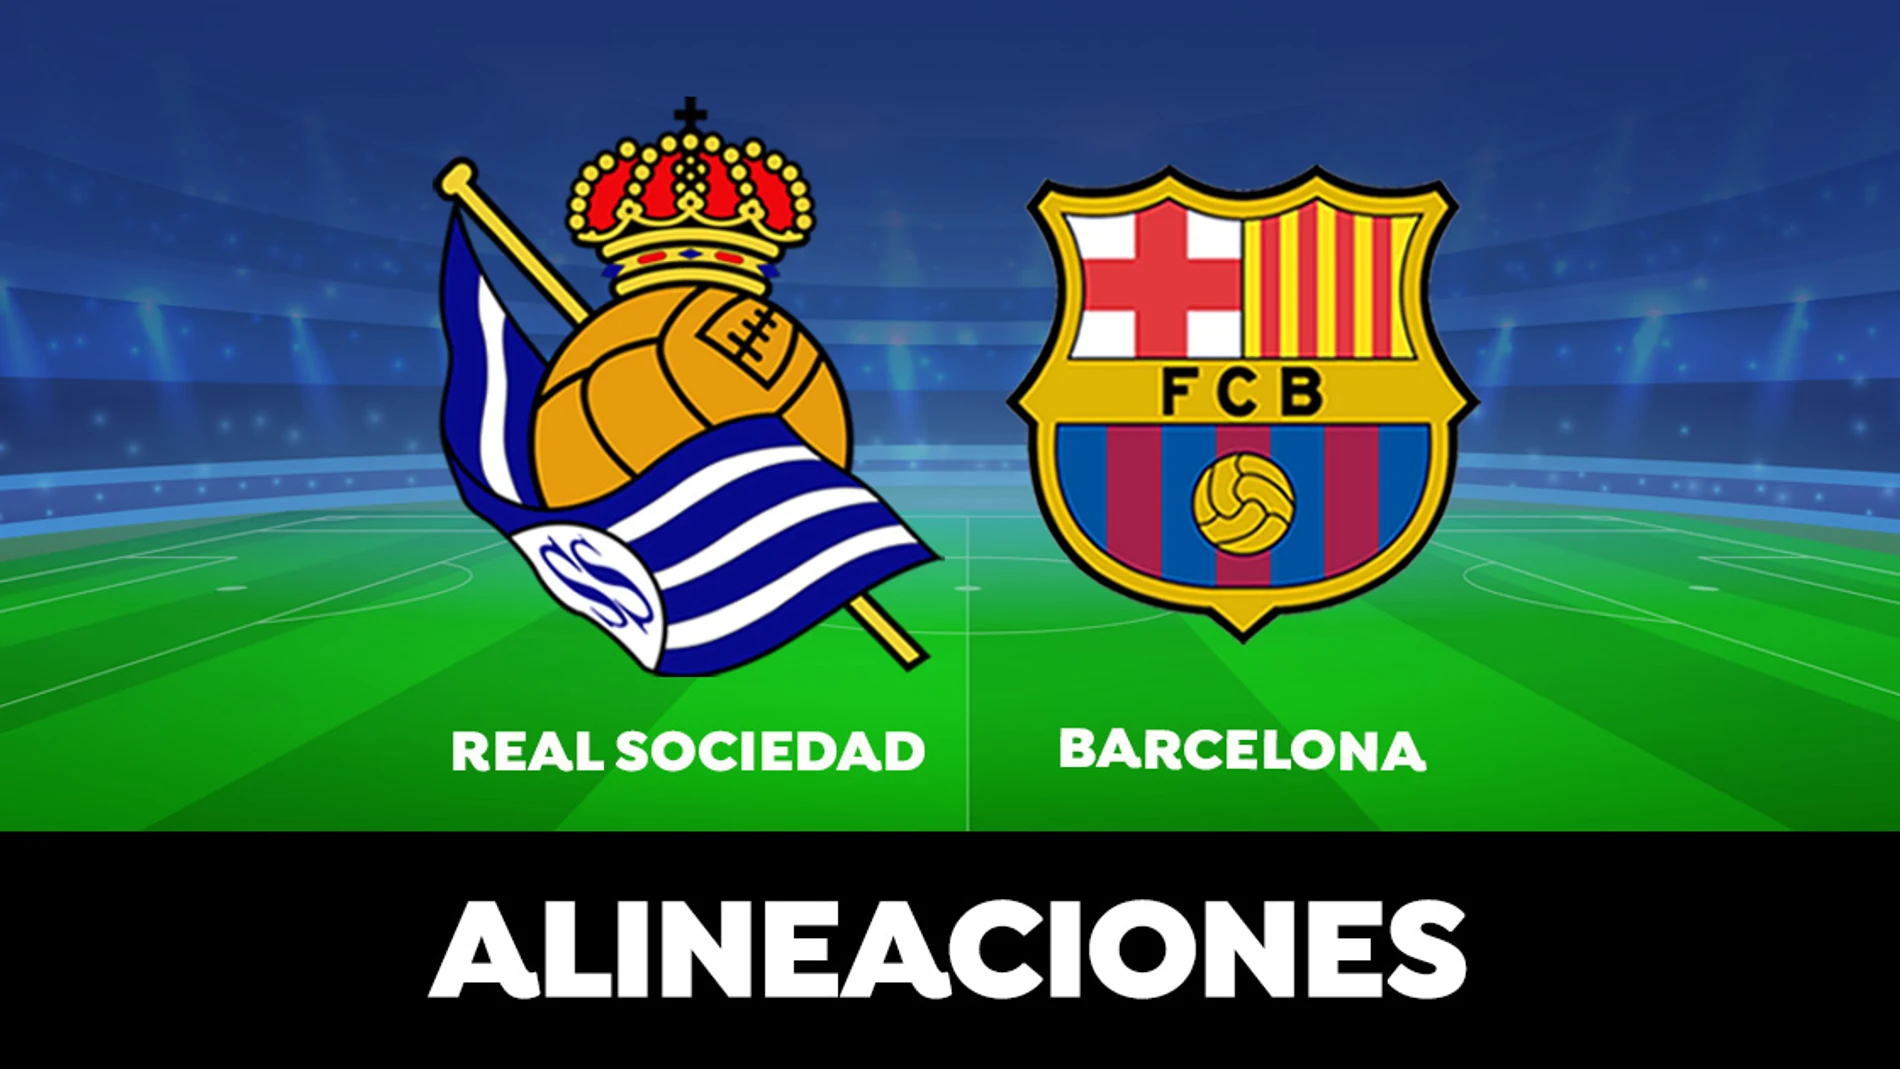 Alineación oficial del Barcelona contra la Real Sociedad en partido de LaLiga